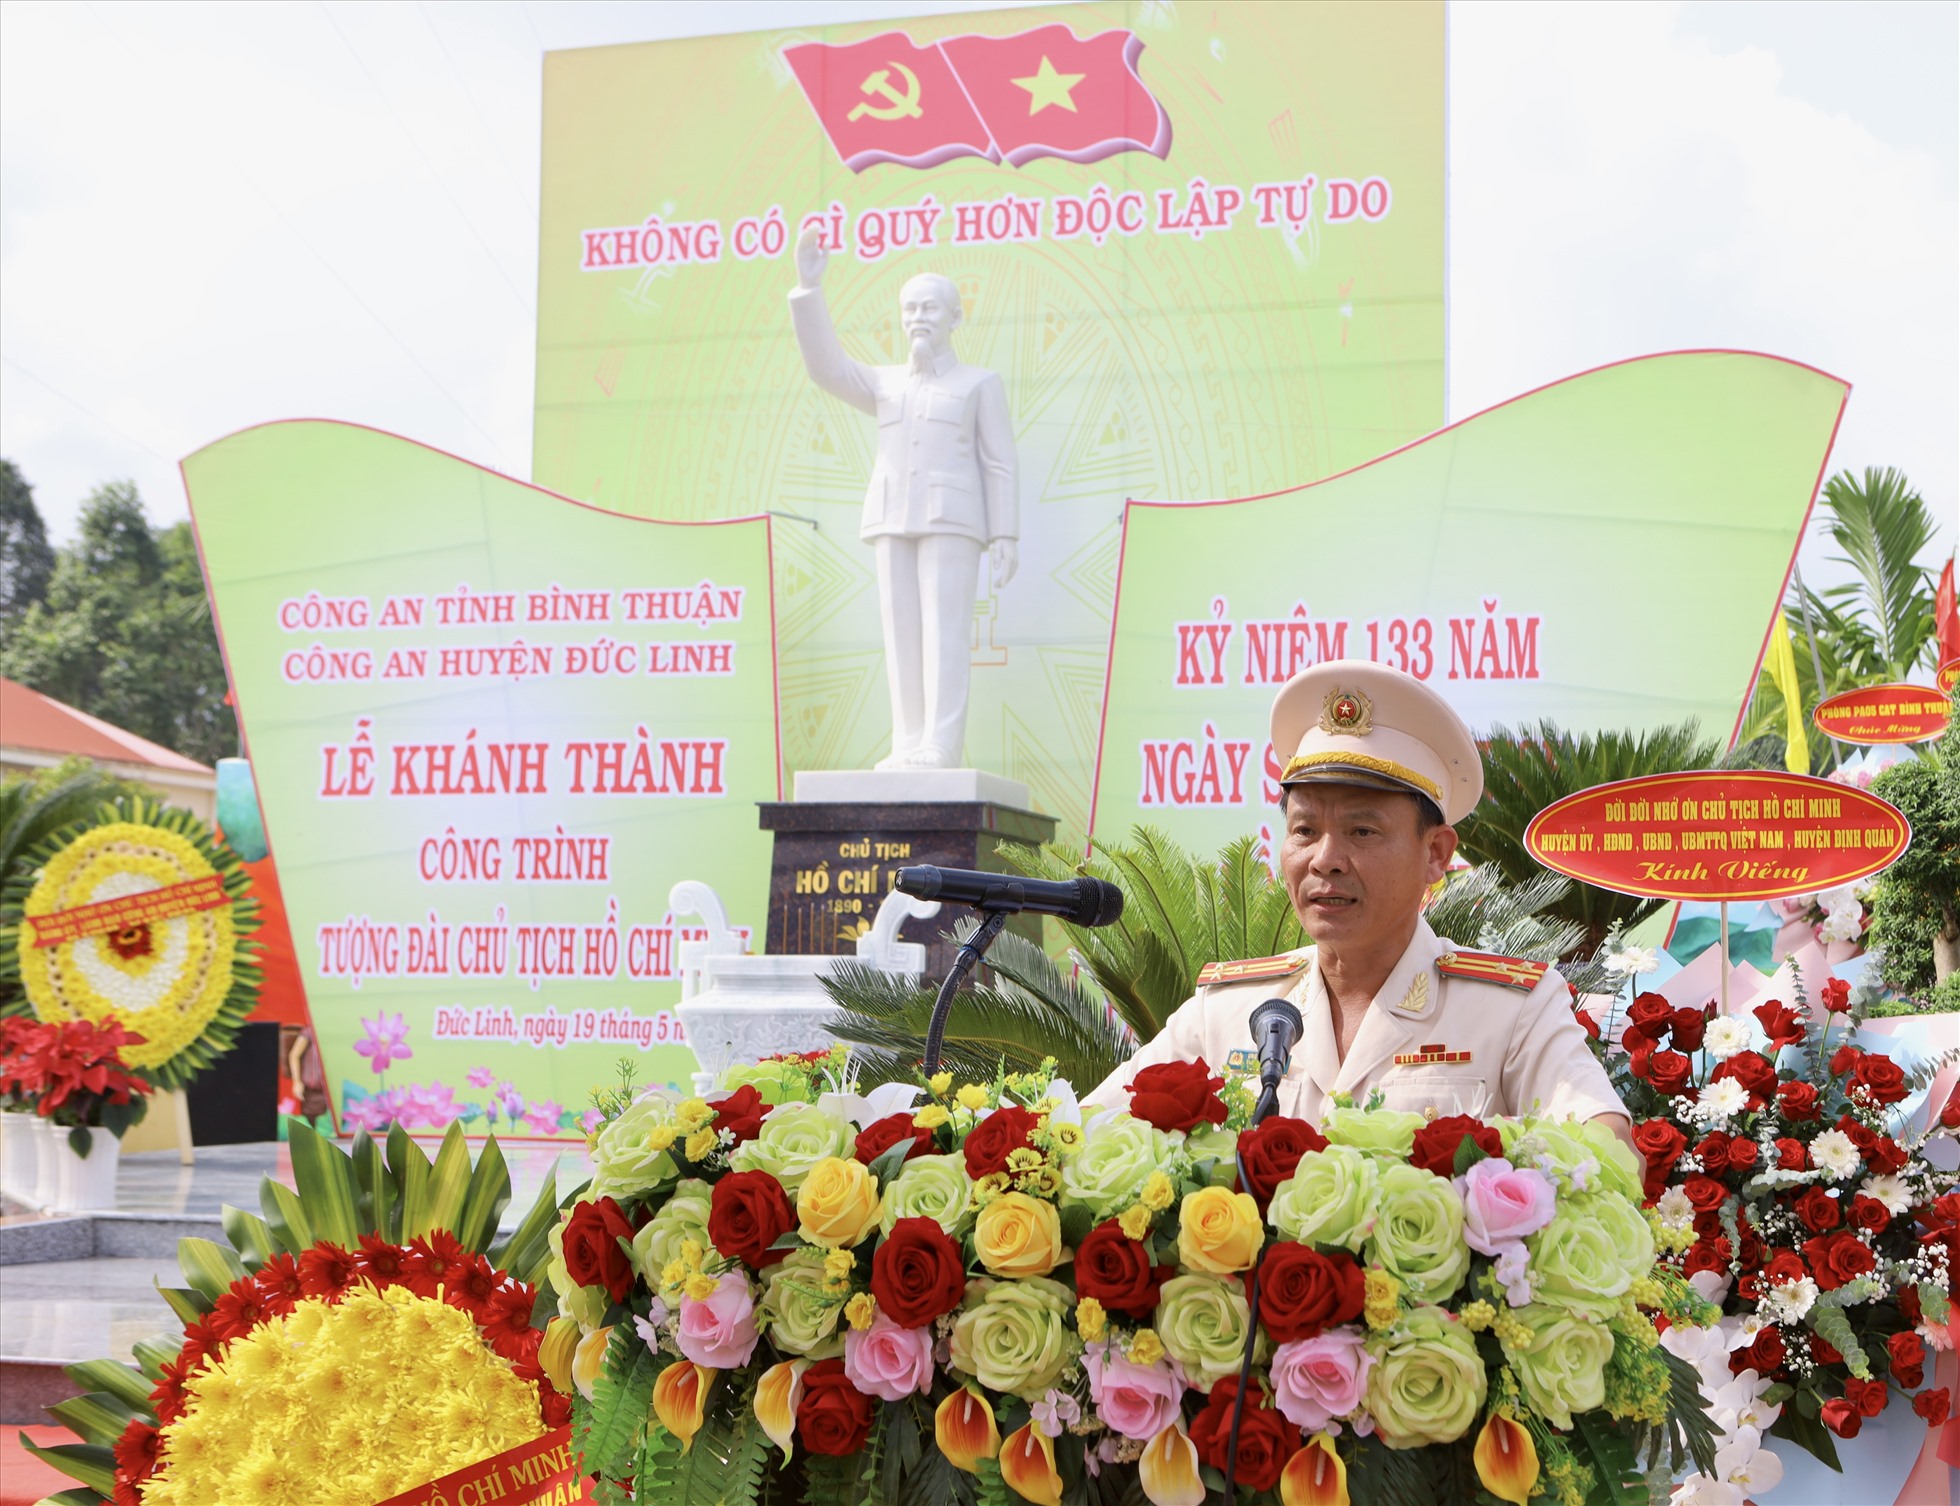 Thượng tá Ung Chiêu Thành, Bí thư Đảng ủy, Trưởng Công an huyện Đức Linh phát biểu báo cáo quá trình xây dựng và khai mạc Lễ khánh thành tượng đài Chủ tịch Hồ Chí Minh. Ảnh: Duy Tuấn